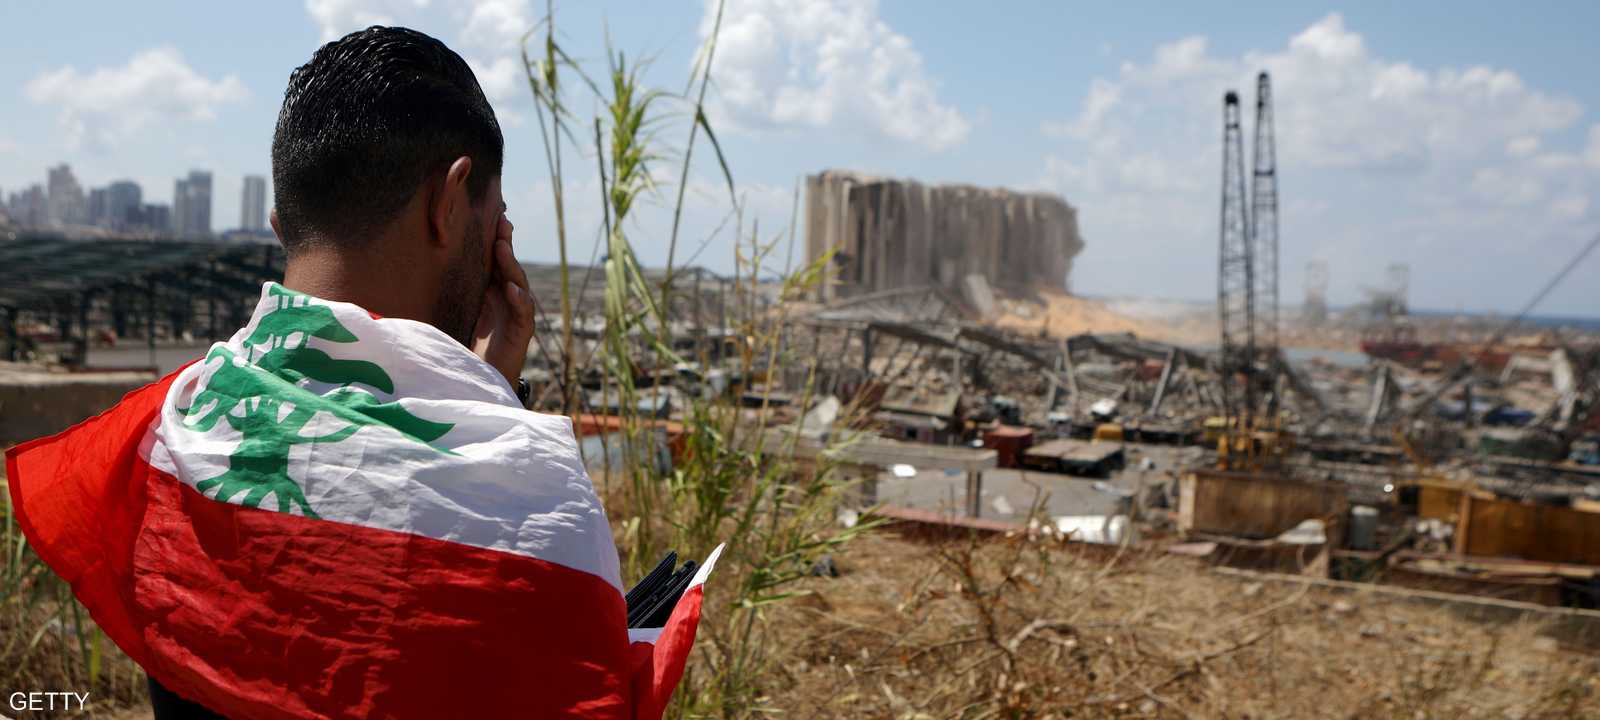 انفجار المرفأ سيؤثر بشدة على اقتصاد لبنان المتداعي